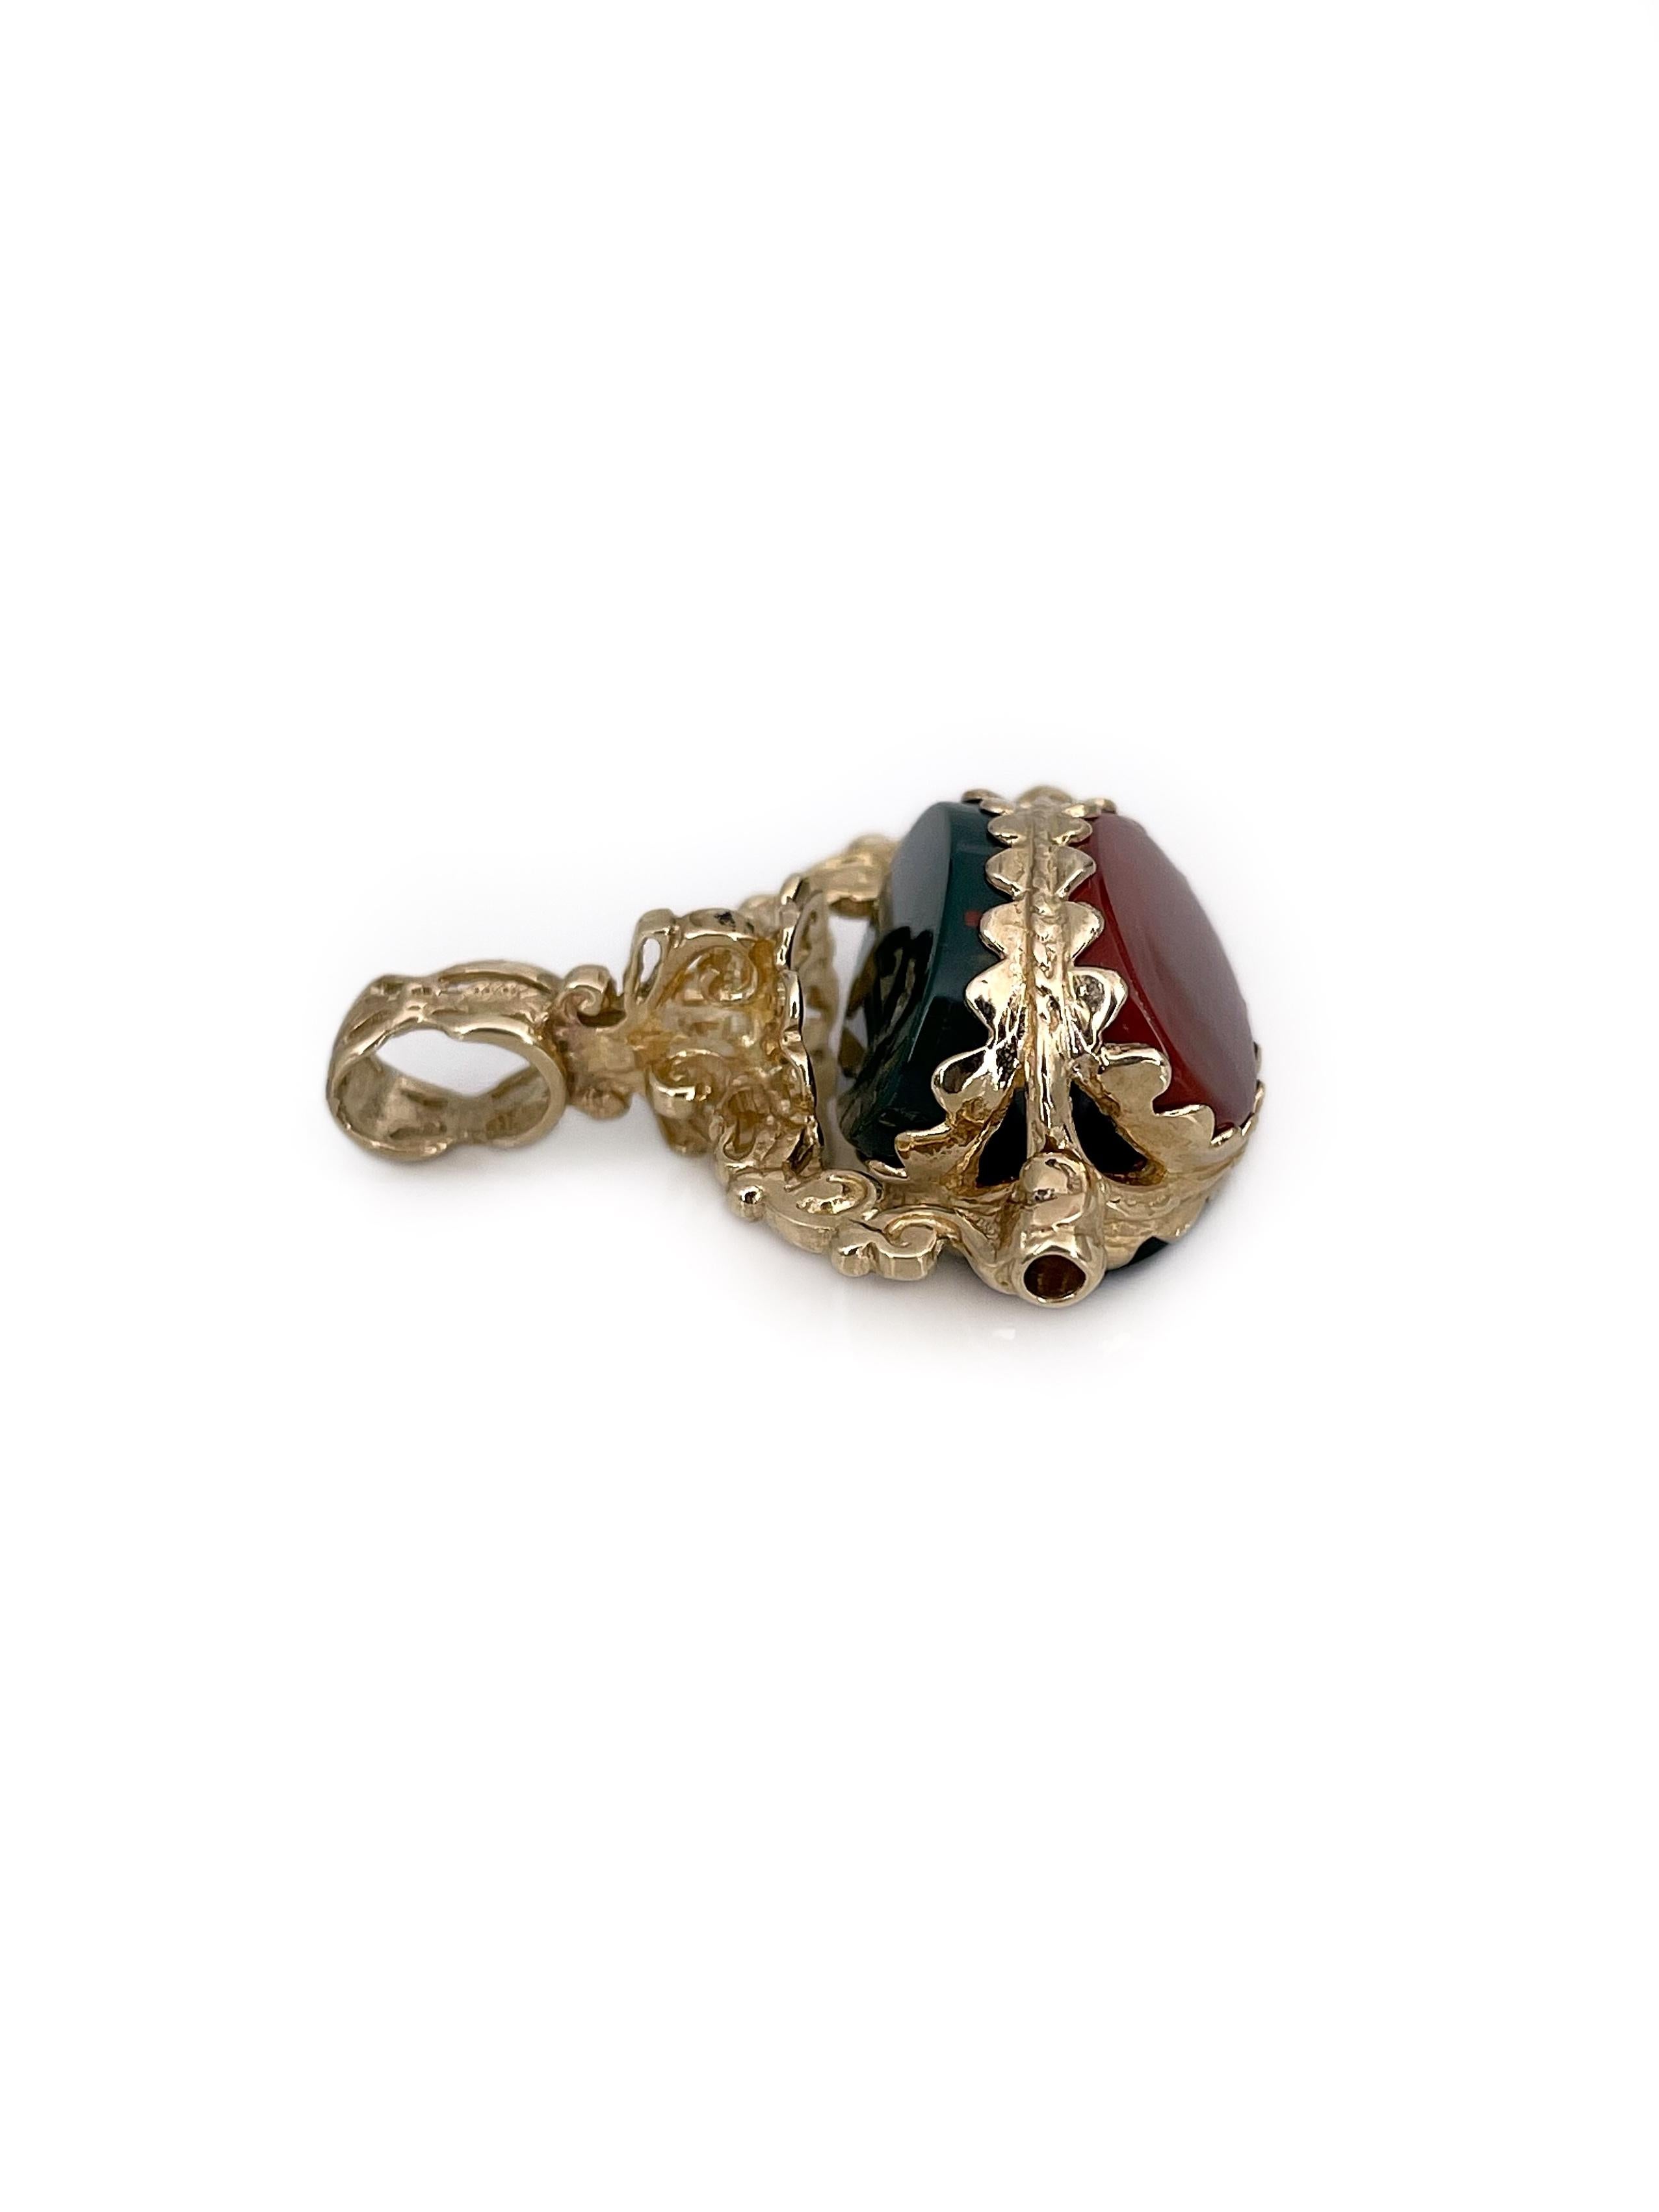 Women's or Men's Victorian 9 Karat Gold Onyx Carnelian Bloodstone Swivel Fob Pendant Necklace